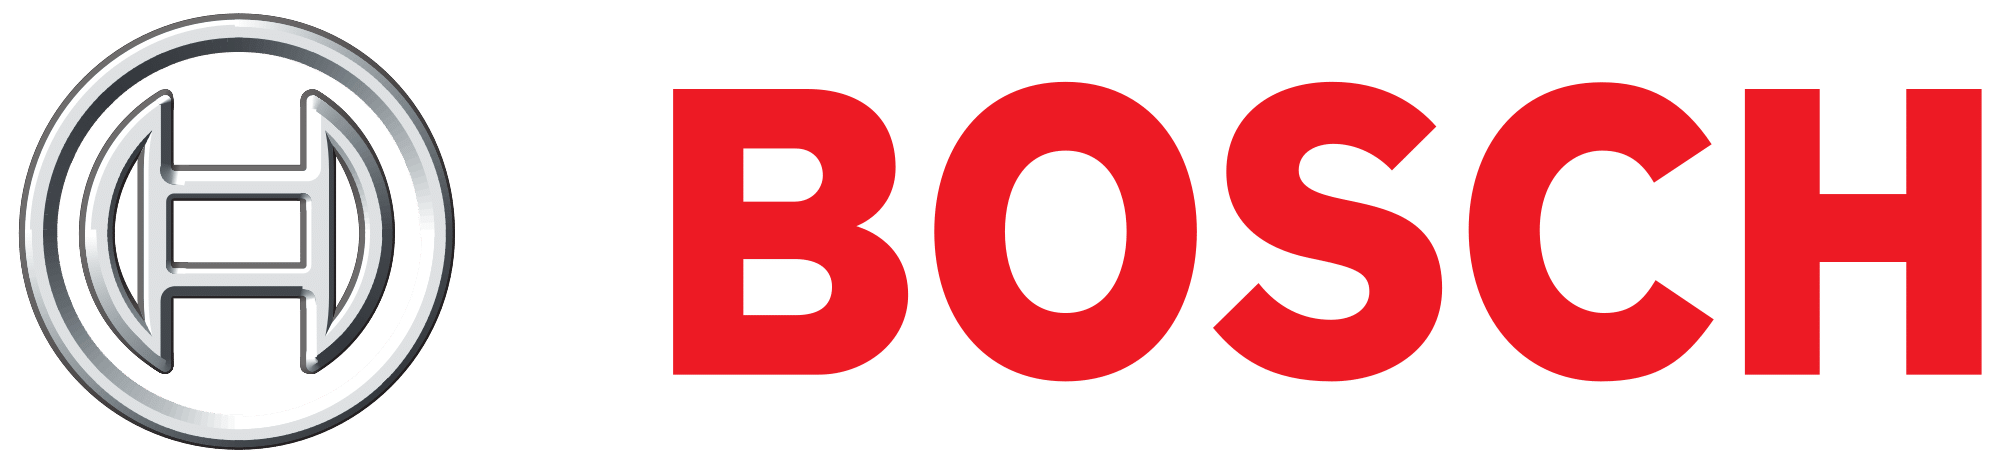 Bosch_logo-3